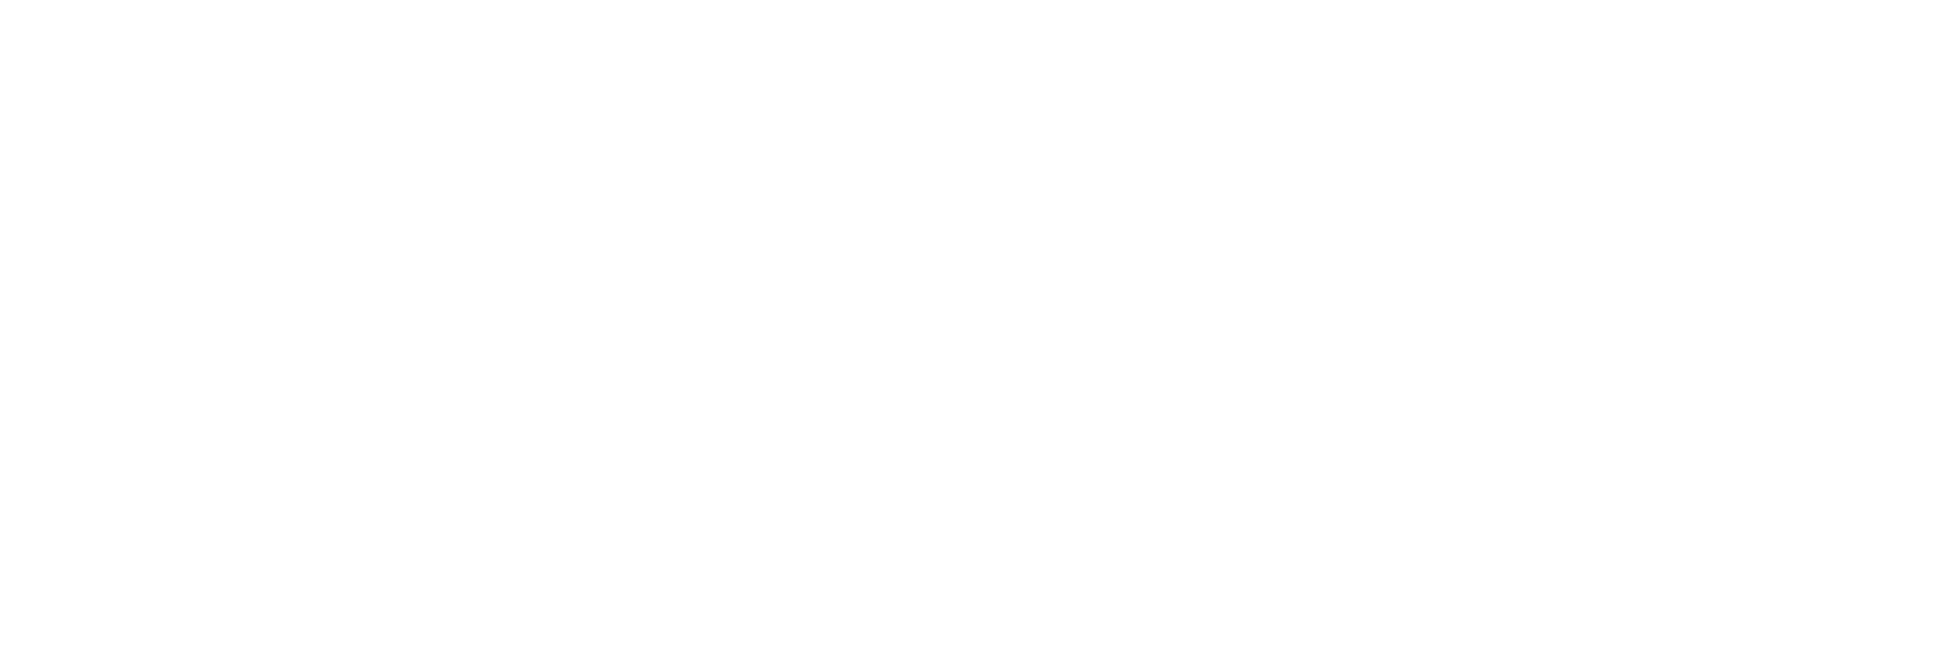 Silhouette - Iconic eyewear meade in Austria. since 1964